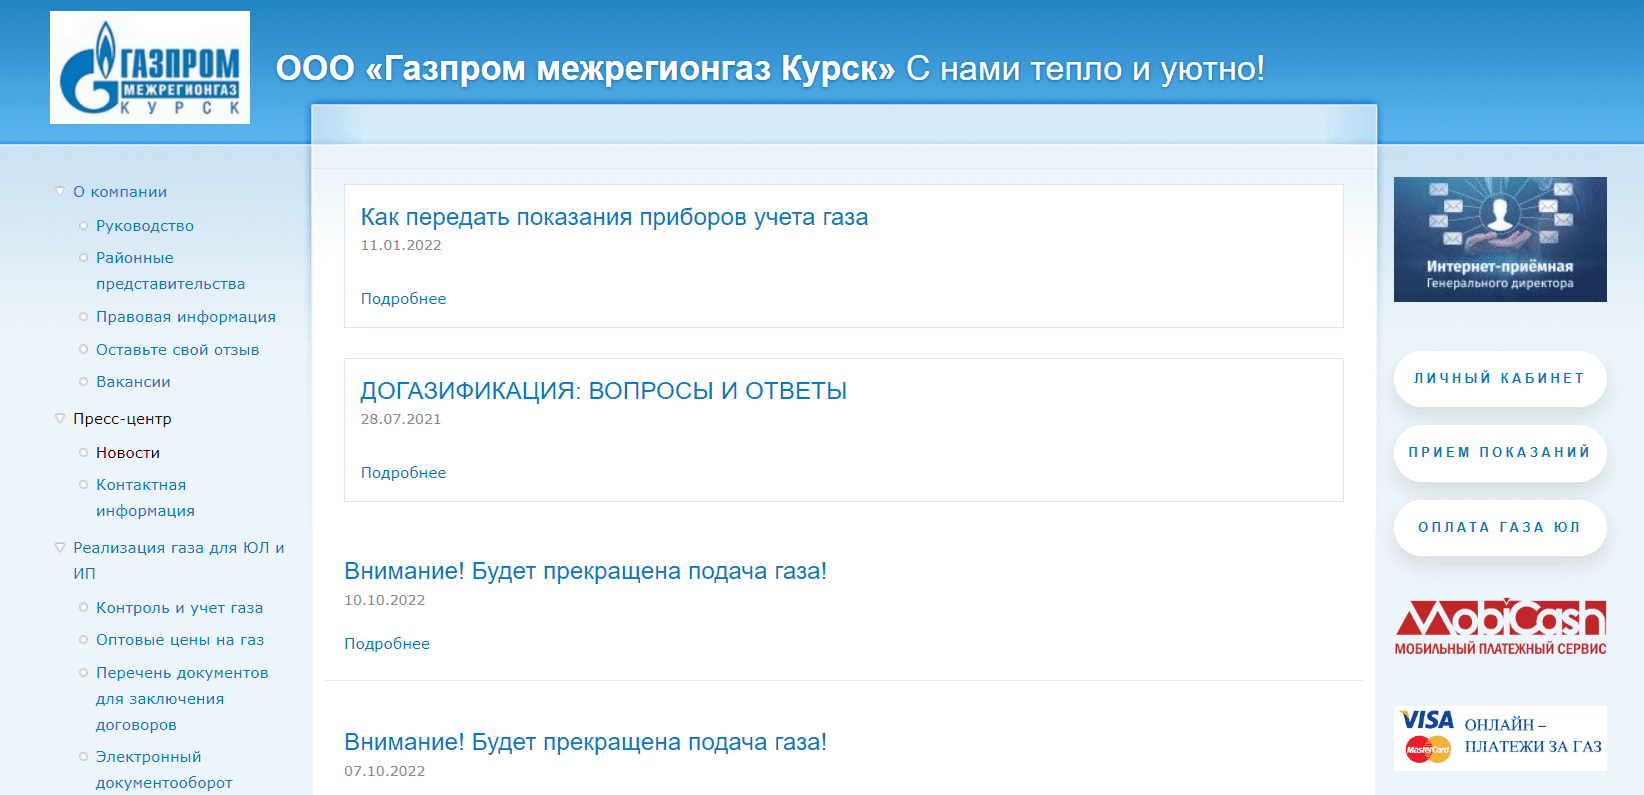 Газпром в Курске (krg.ru) – личный кабинет, регистрация